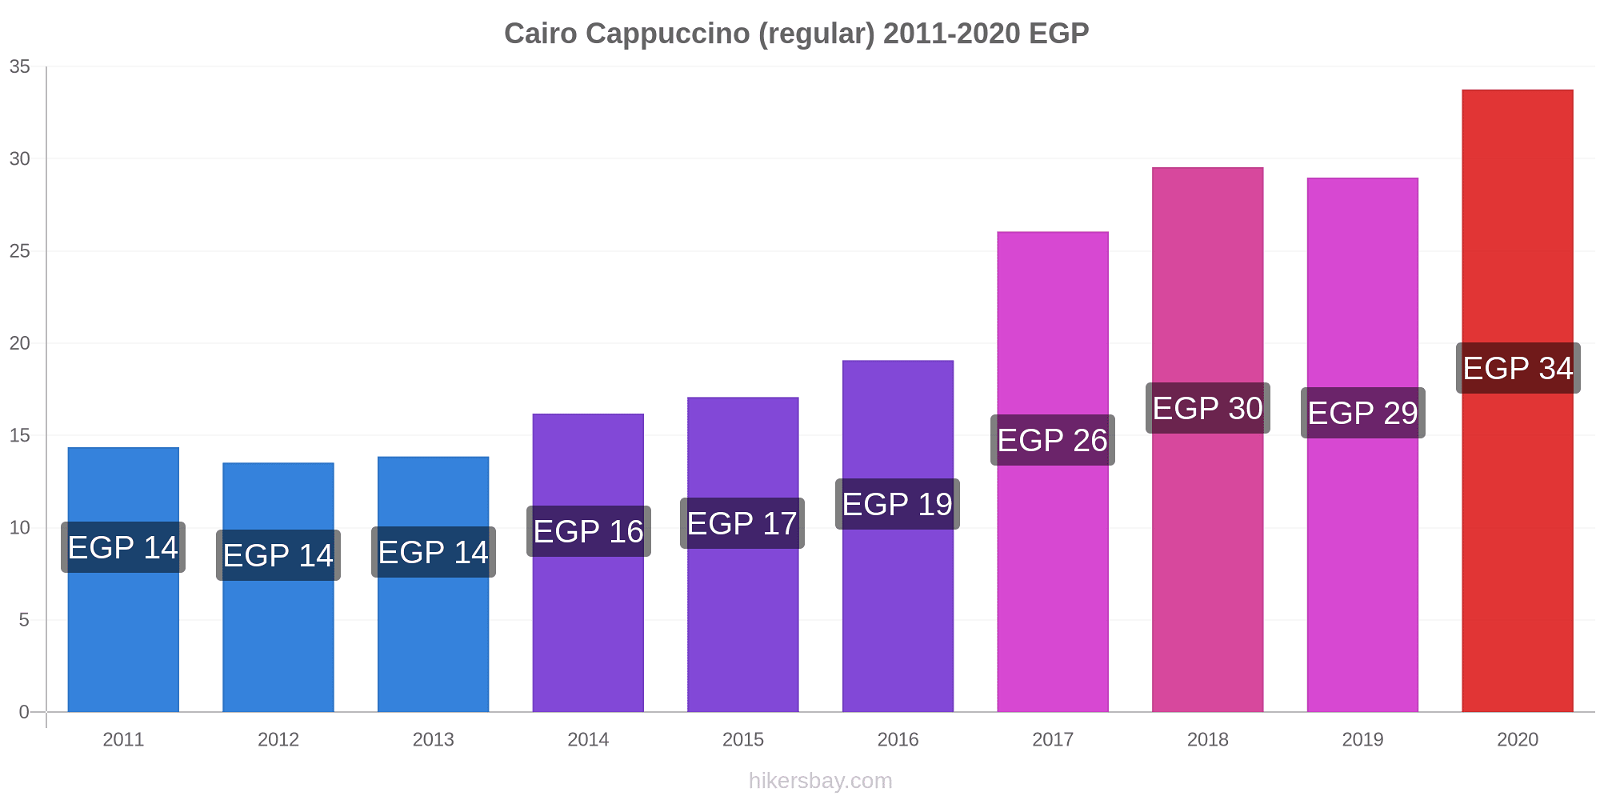 Cairo price changes Cappuccino (regular) hikersbay.com